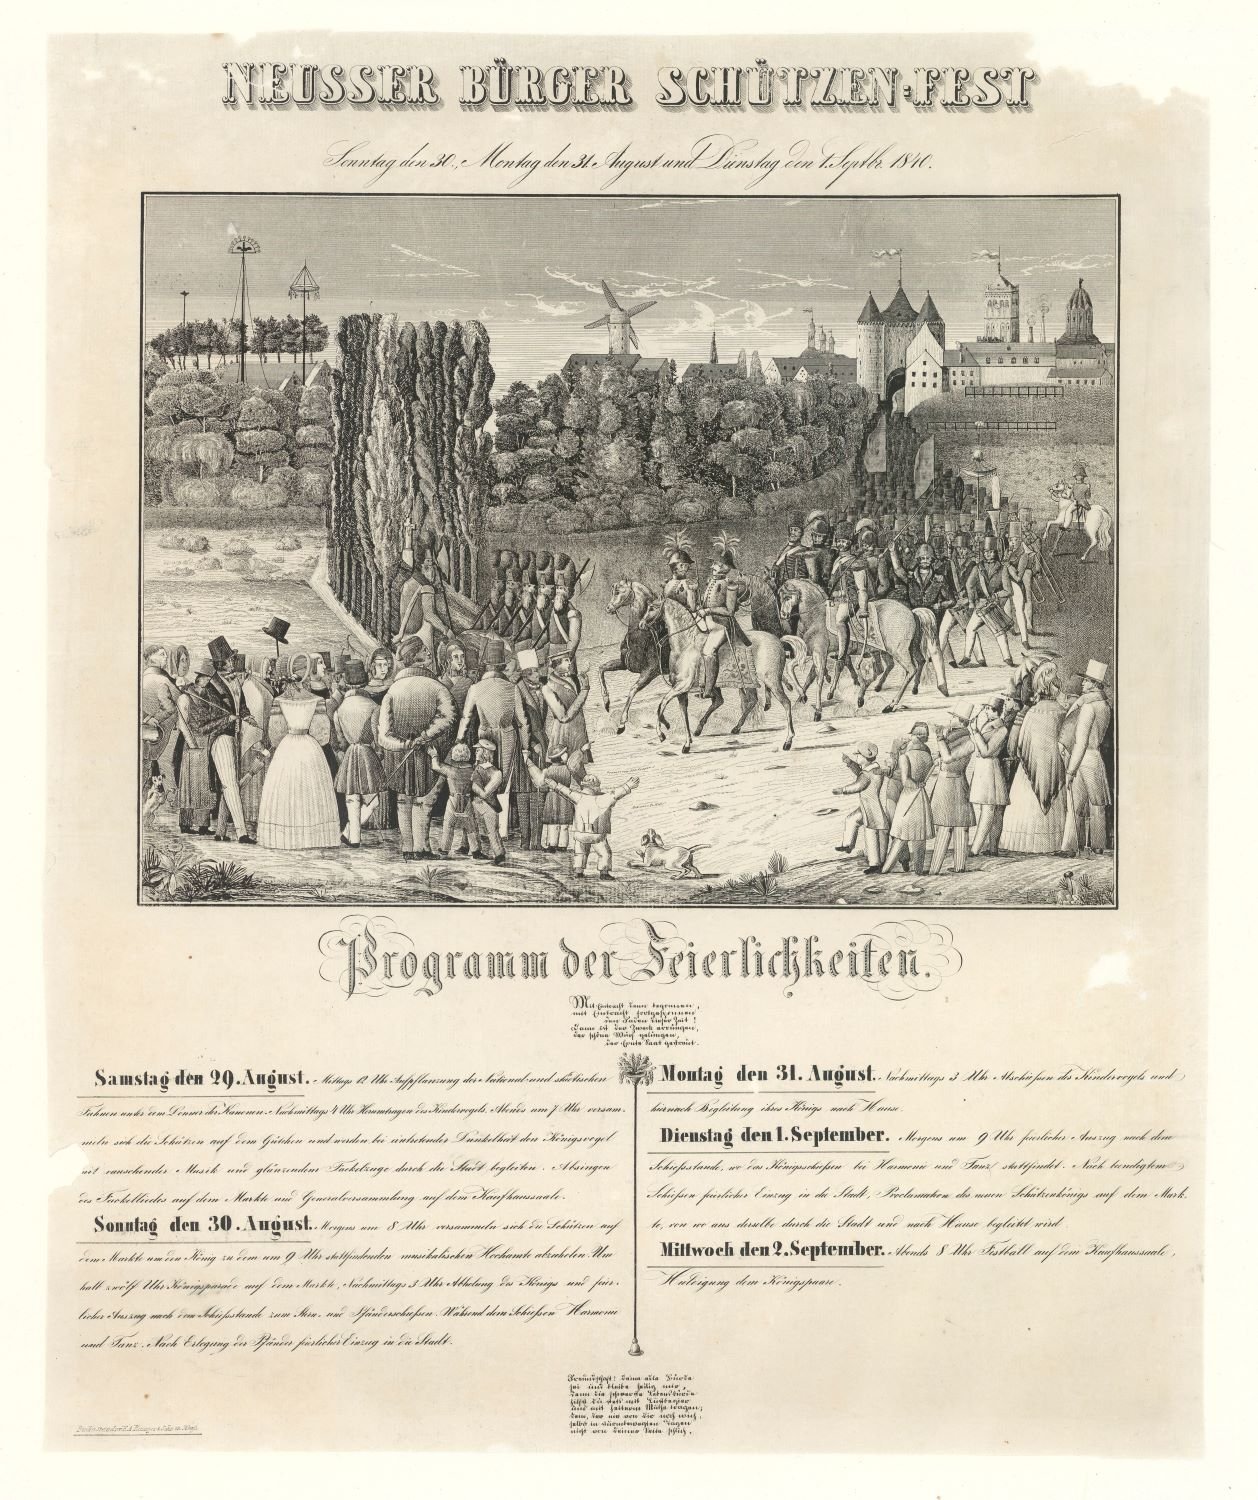 Festplakat Neusser Schützenfest von 1840 (Rheinisches Schützenmuseum Neuss CC BY-NC-SA)